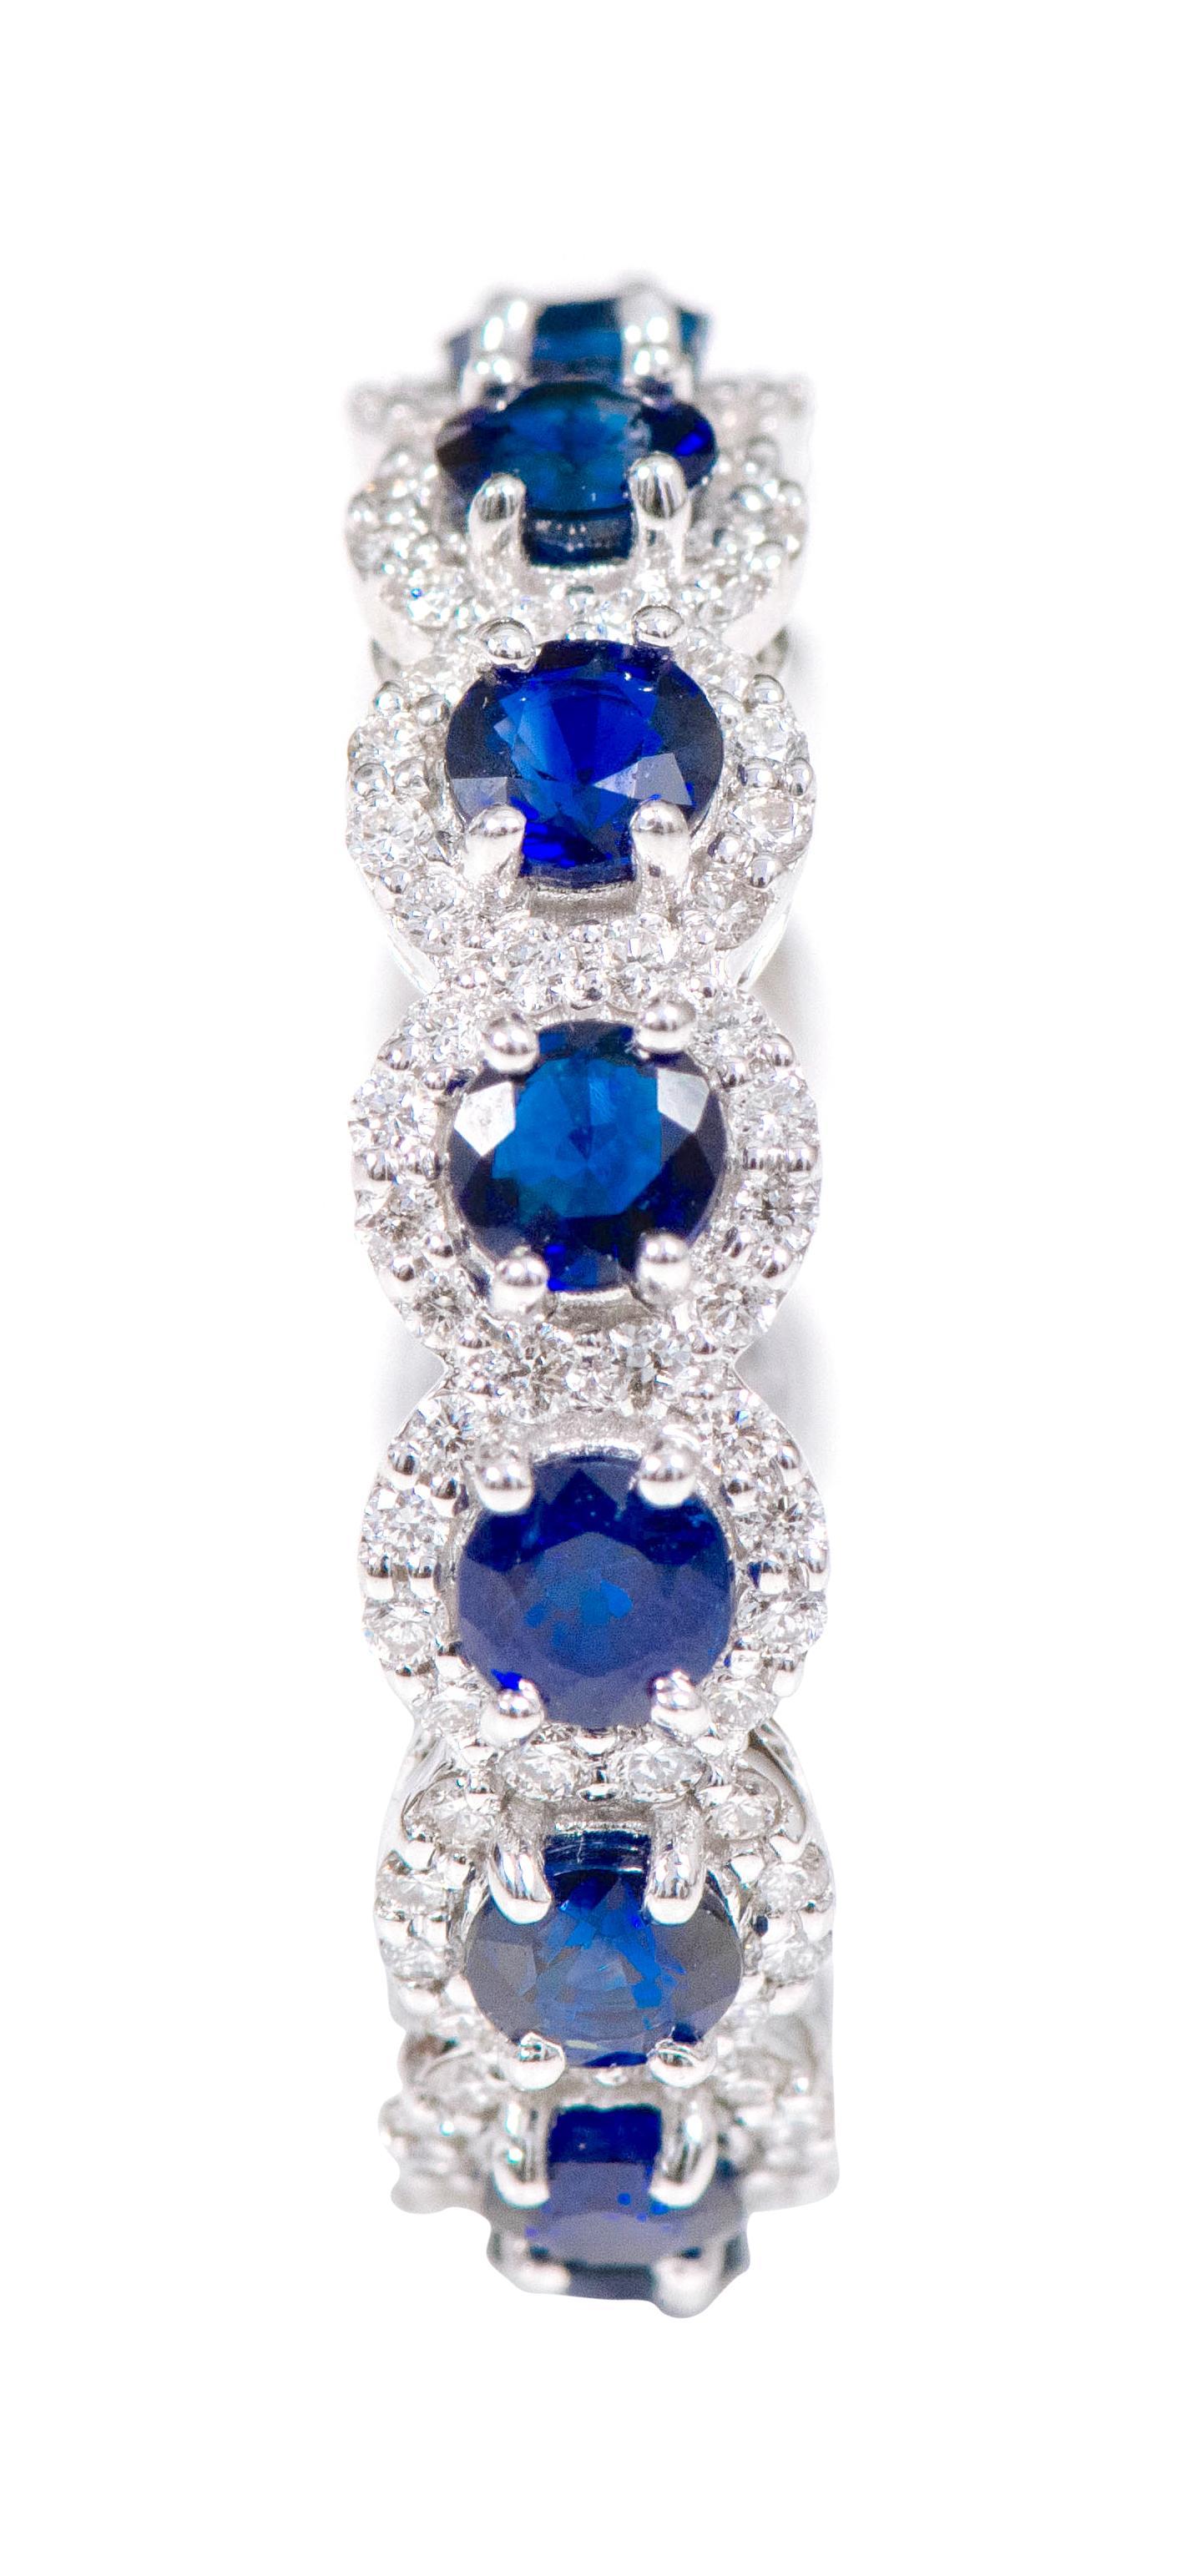 bague d'alliance en or blanc 18 carats avec saphir et diamant en grappe (3,39 carats)

Ce bracelet immersif en forme de grappe de saphirs bleu royal et de diamants est hypnotisant. Les saphirs solitaires de taille ronde en serti aigle sont